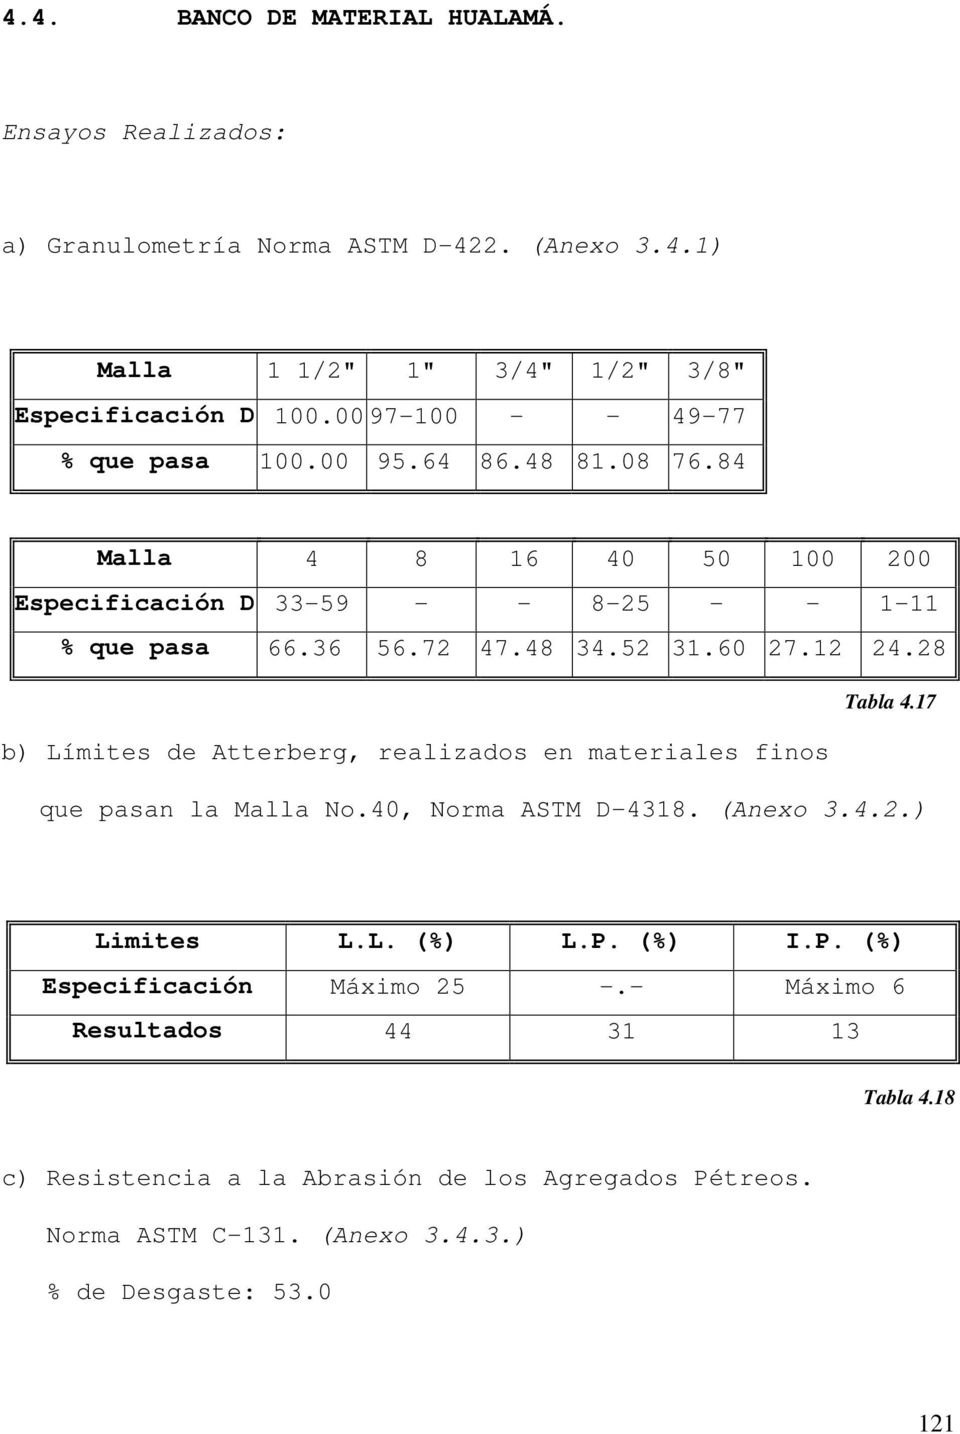 60 27.12 24.28 Tabla 4.17 b) Límites de Atterberg, realizados en materiales finos que pasan la Malla No.40, Norma ASTM D-4318. (Anexo 3.4.2.) Limites L.L. (%) L.P. (%) I.